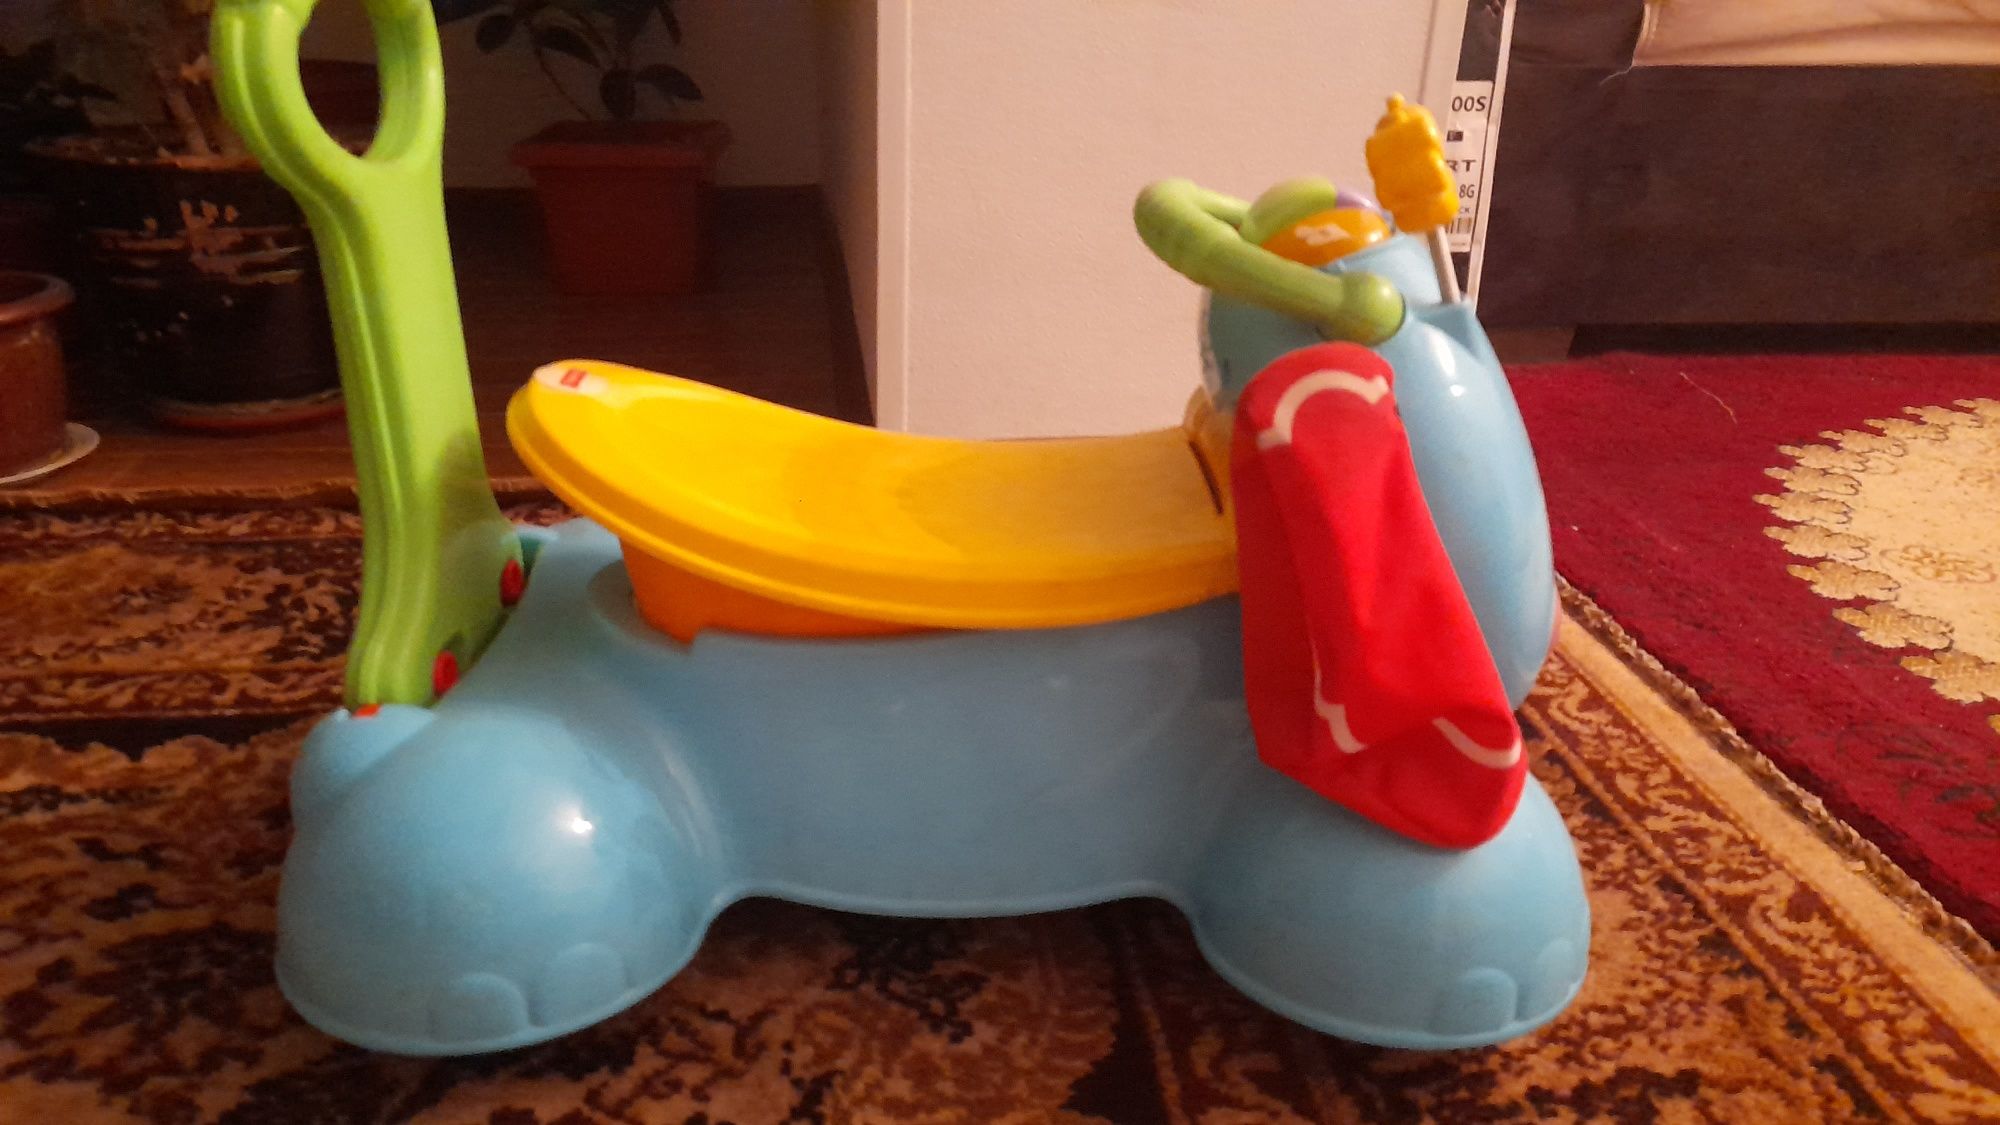 Машинка для детей с 2 до 5 лет, развлекательный музыкой и игрушками.